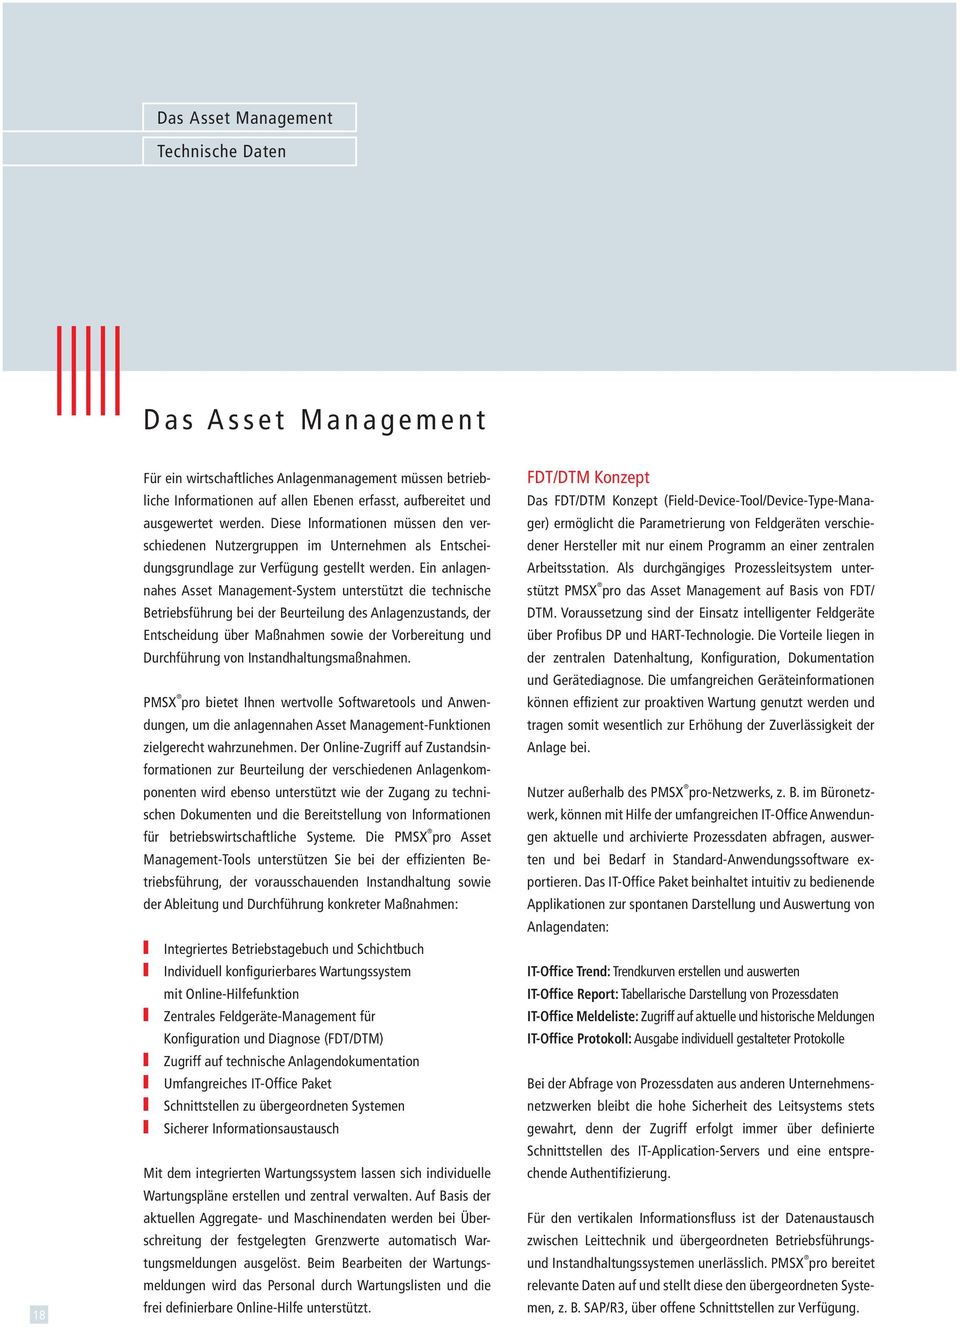 Ein anlagennahes Asset Management-System unterstützt die technische Betriebs führung bei der Beurteilung des Anlagenzustands, der Entscheidung über Maßnahmen sowie der Vorbereitung und Durchführung